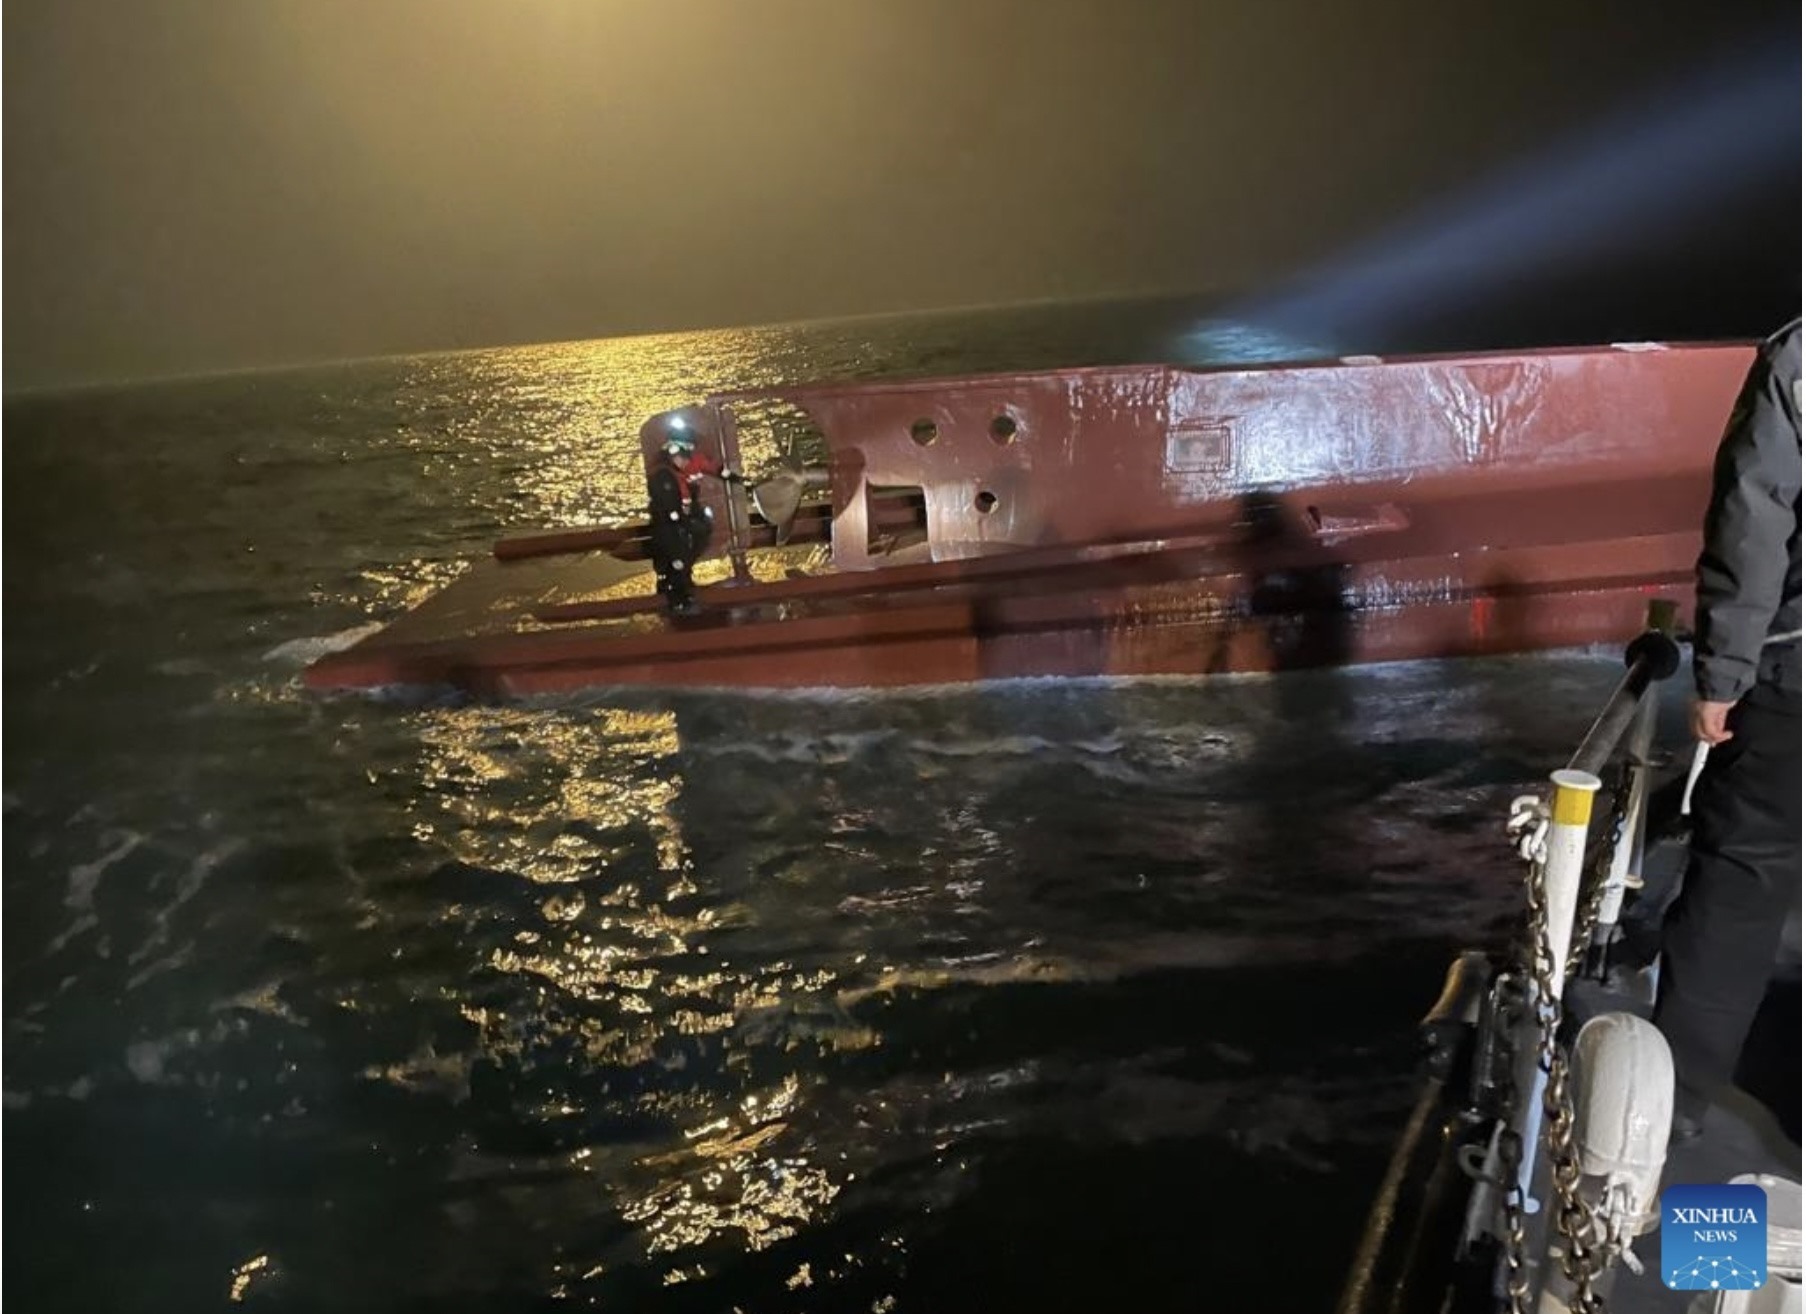 Hiện trường vụ tàu đánh cá đã bị chìm ngoài khơi huyện Sinan, tỉnh Jeonnam, Hàn Quốc. Ảnh: Tân Hoa Xã